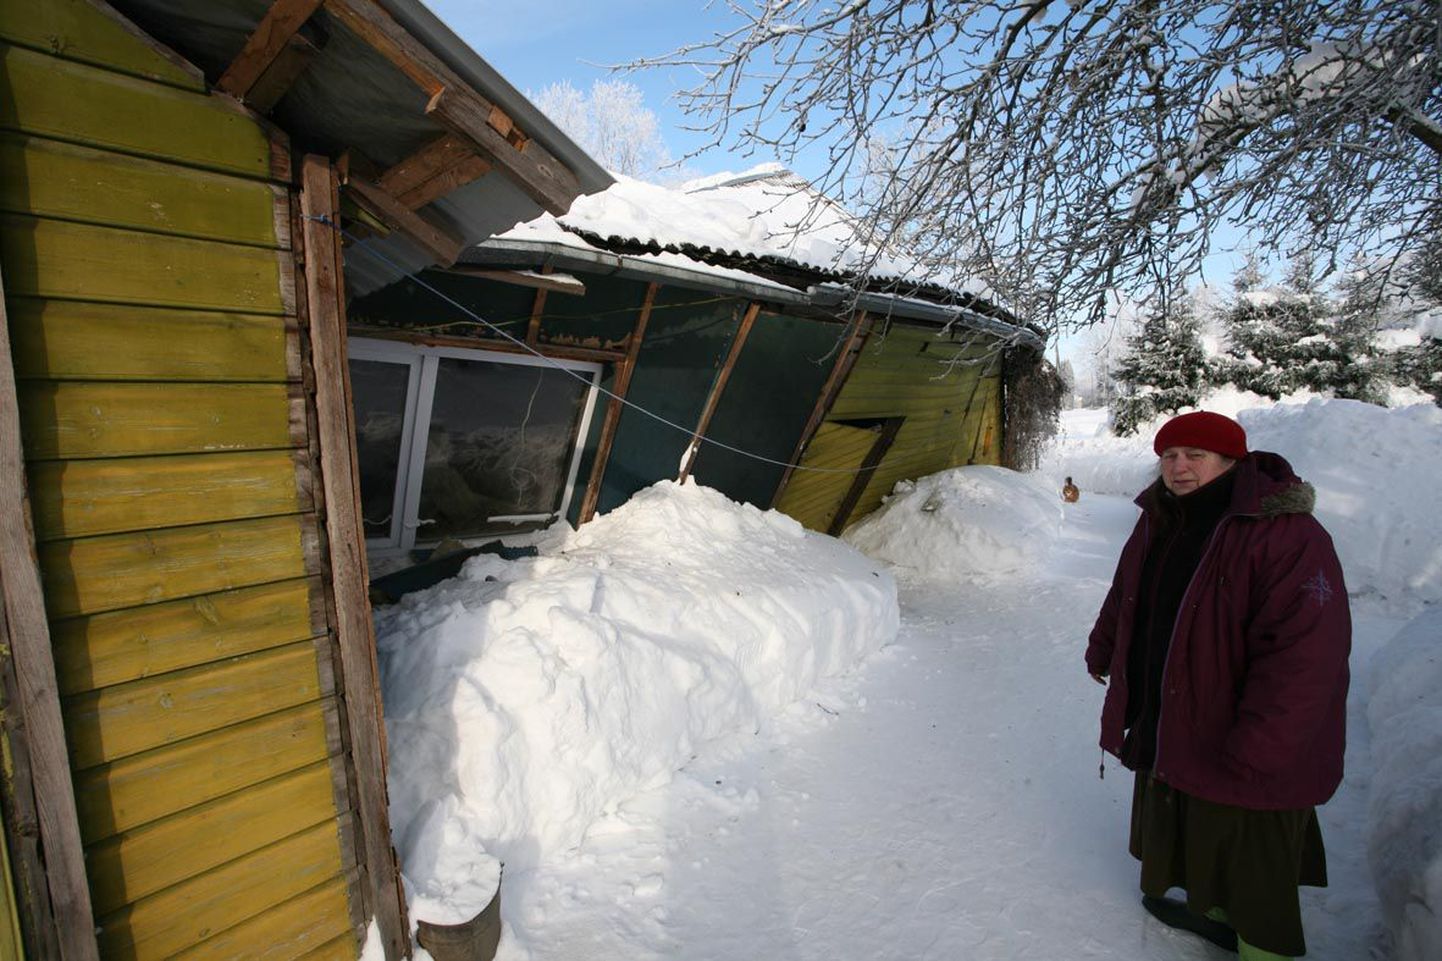 Türilane Mae Rannastik jäi katuse puhtaks rookimisega hiljaks ning lumi sai sellest jagu.